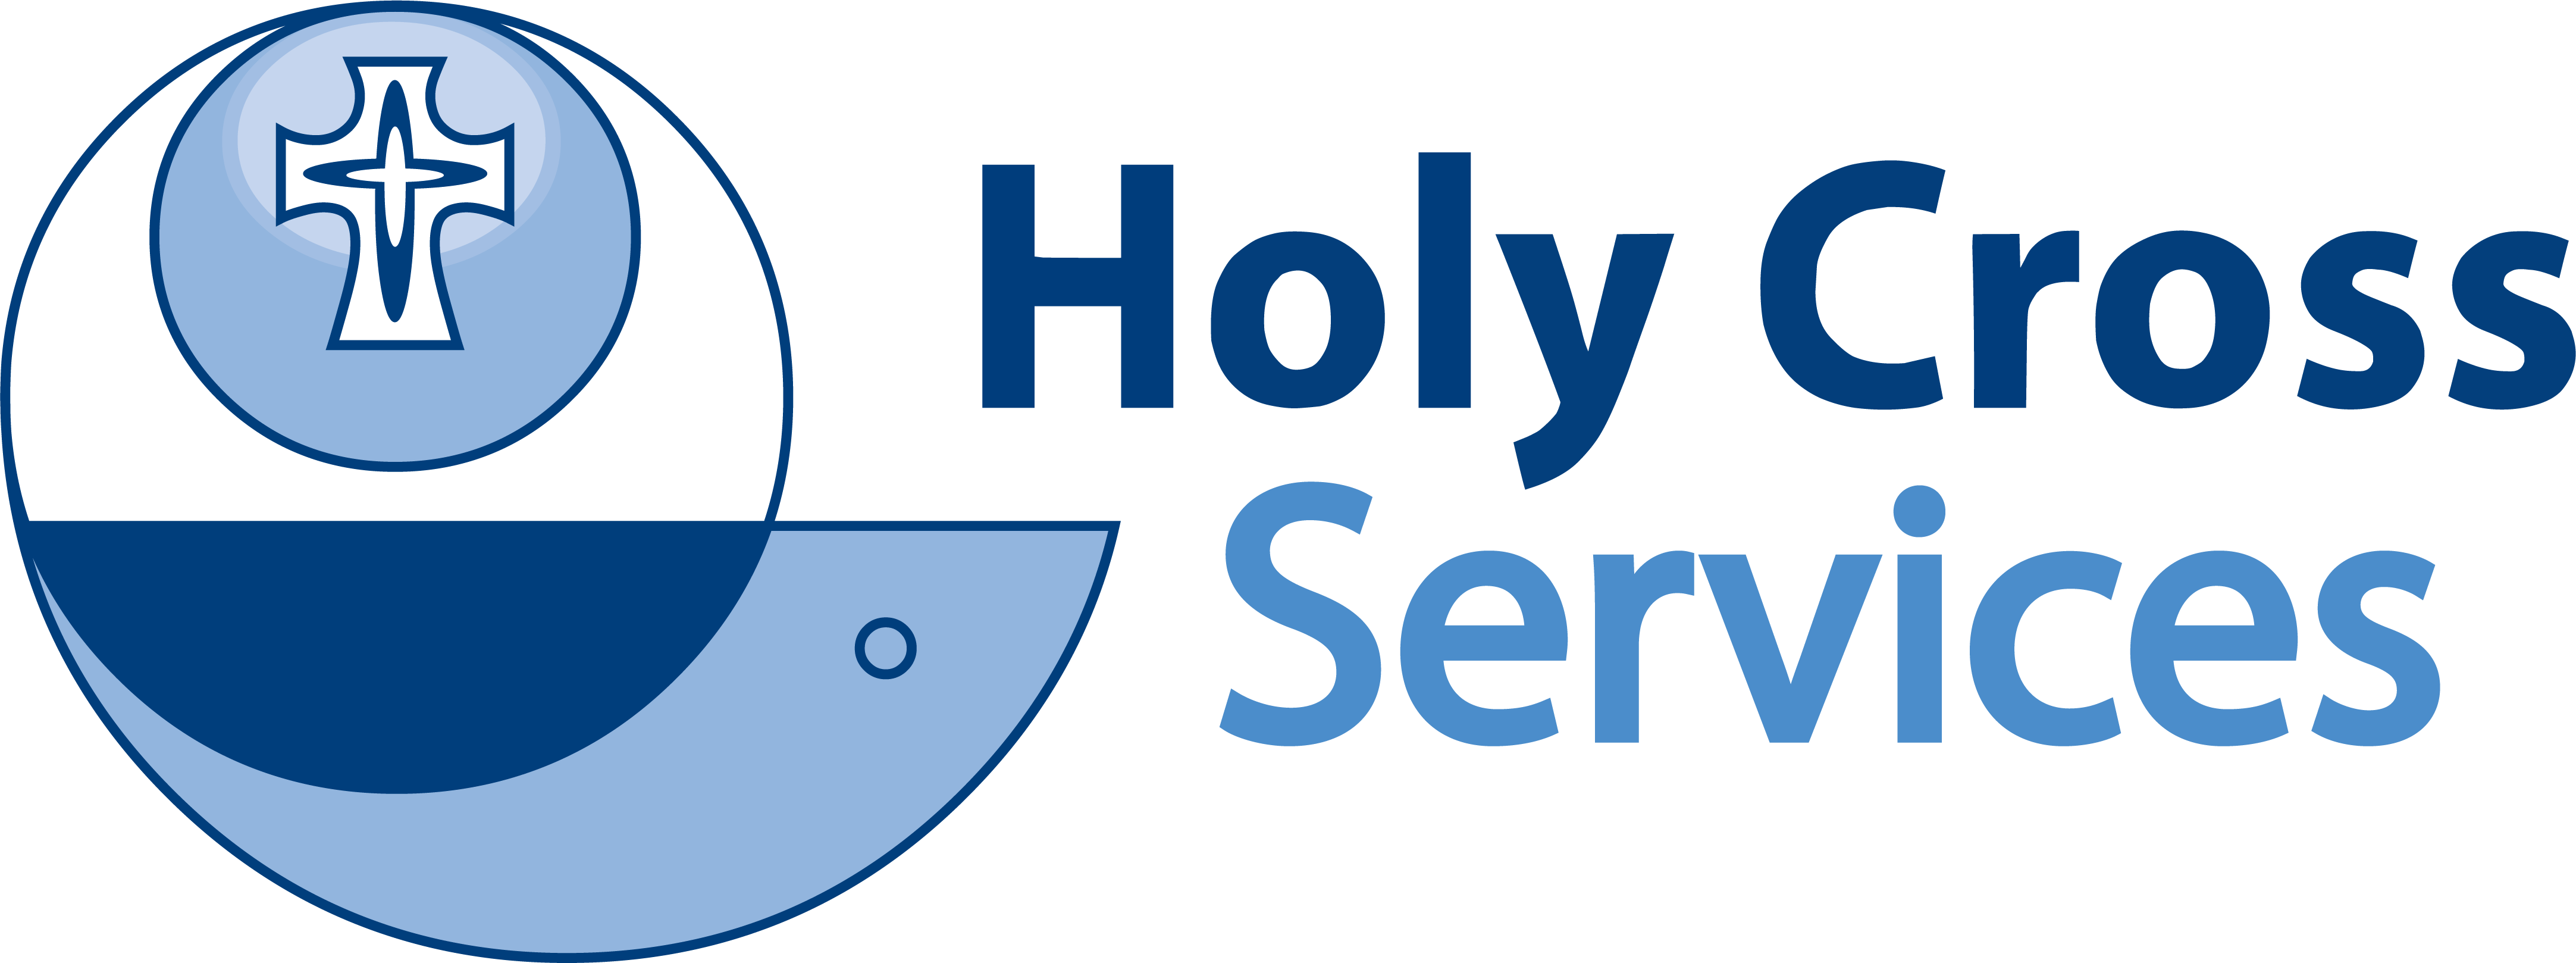 Hcs-Logo_Master.png